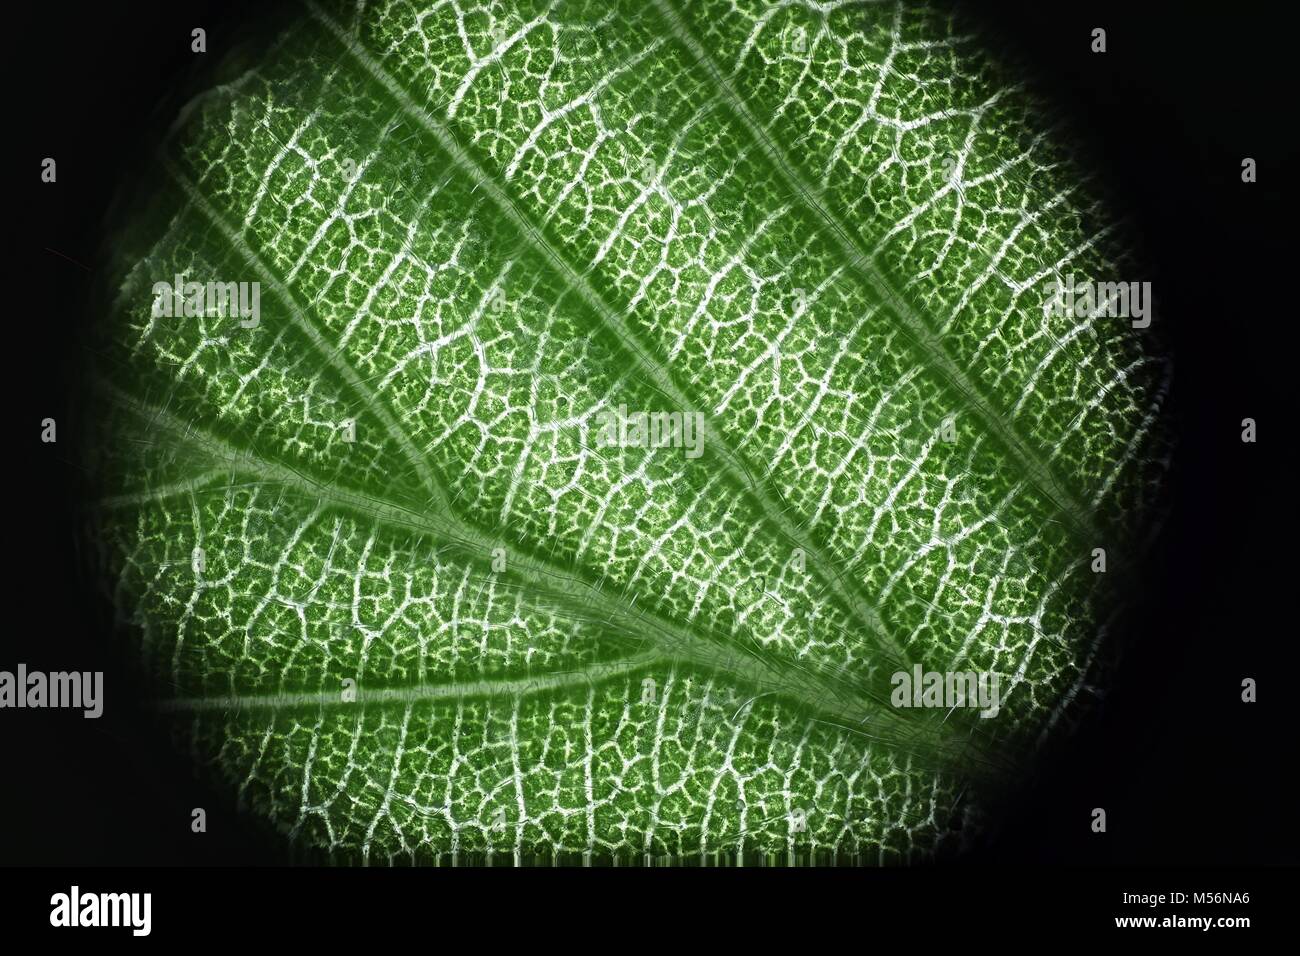 Imagen de microscopio de una hoja de avellano común Foto de stock